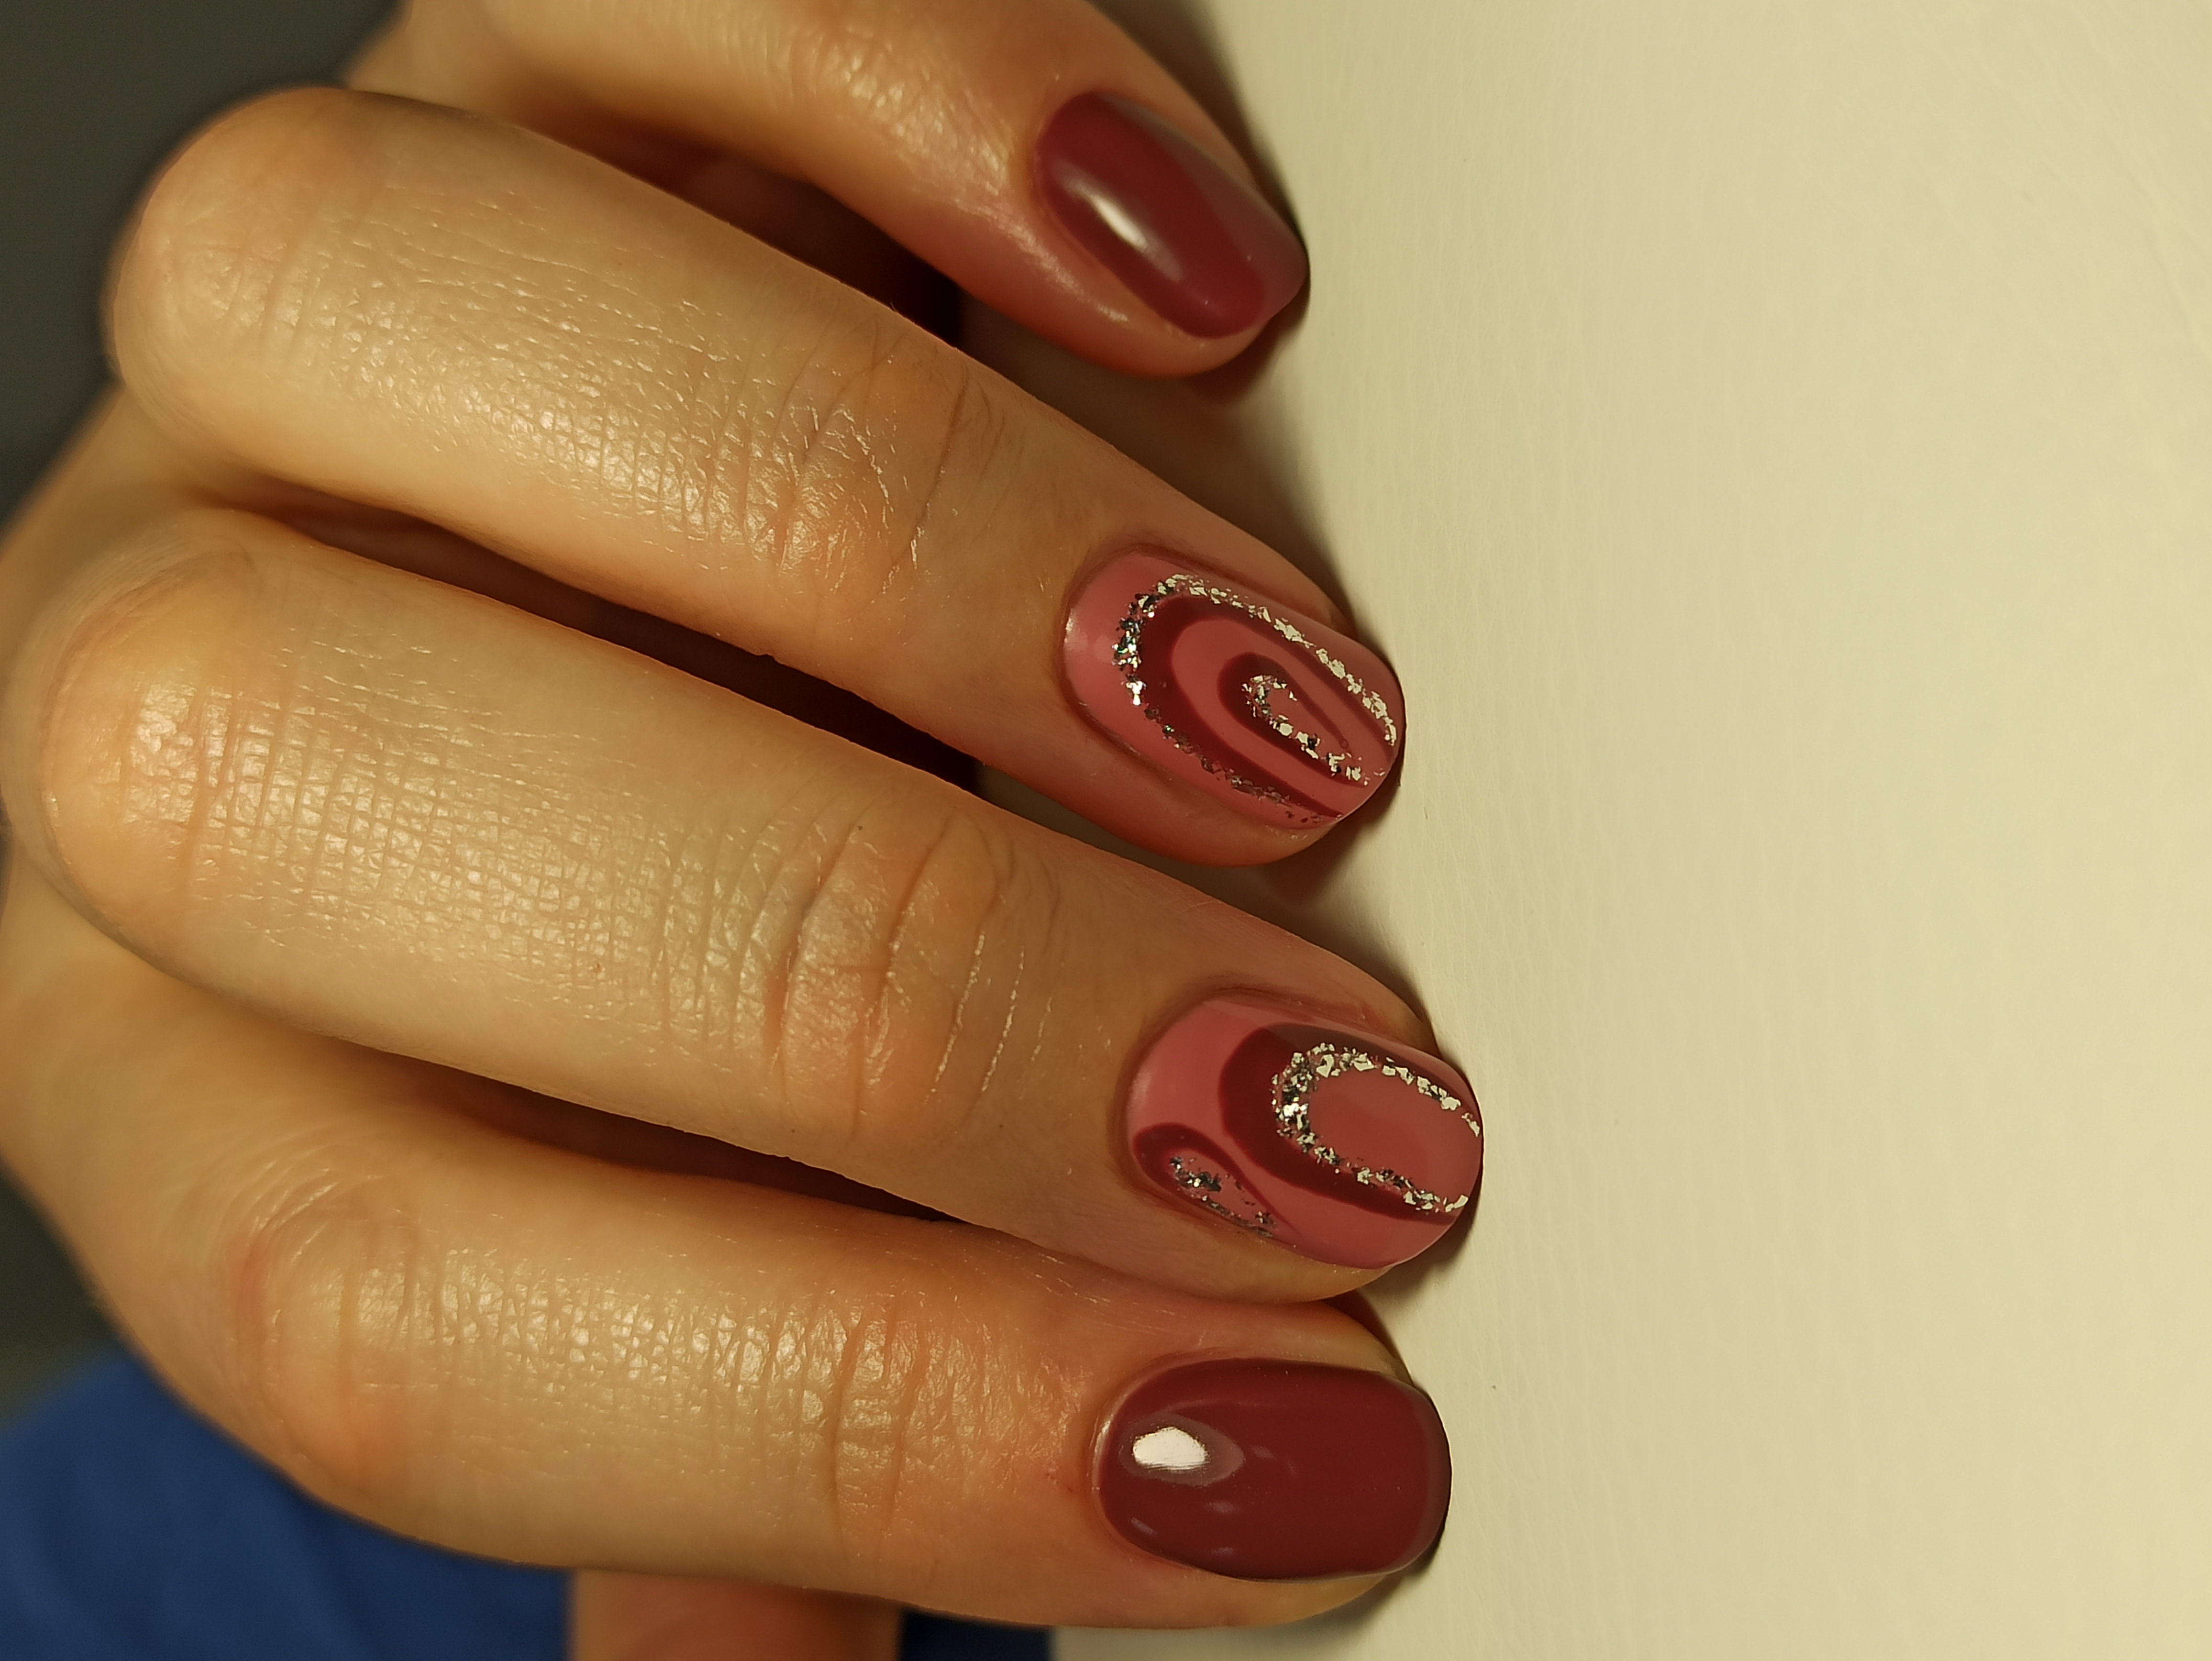 Маникюр с геометрический рисунком и блестками в бордовом цвете на короткие ногти.